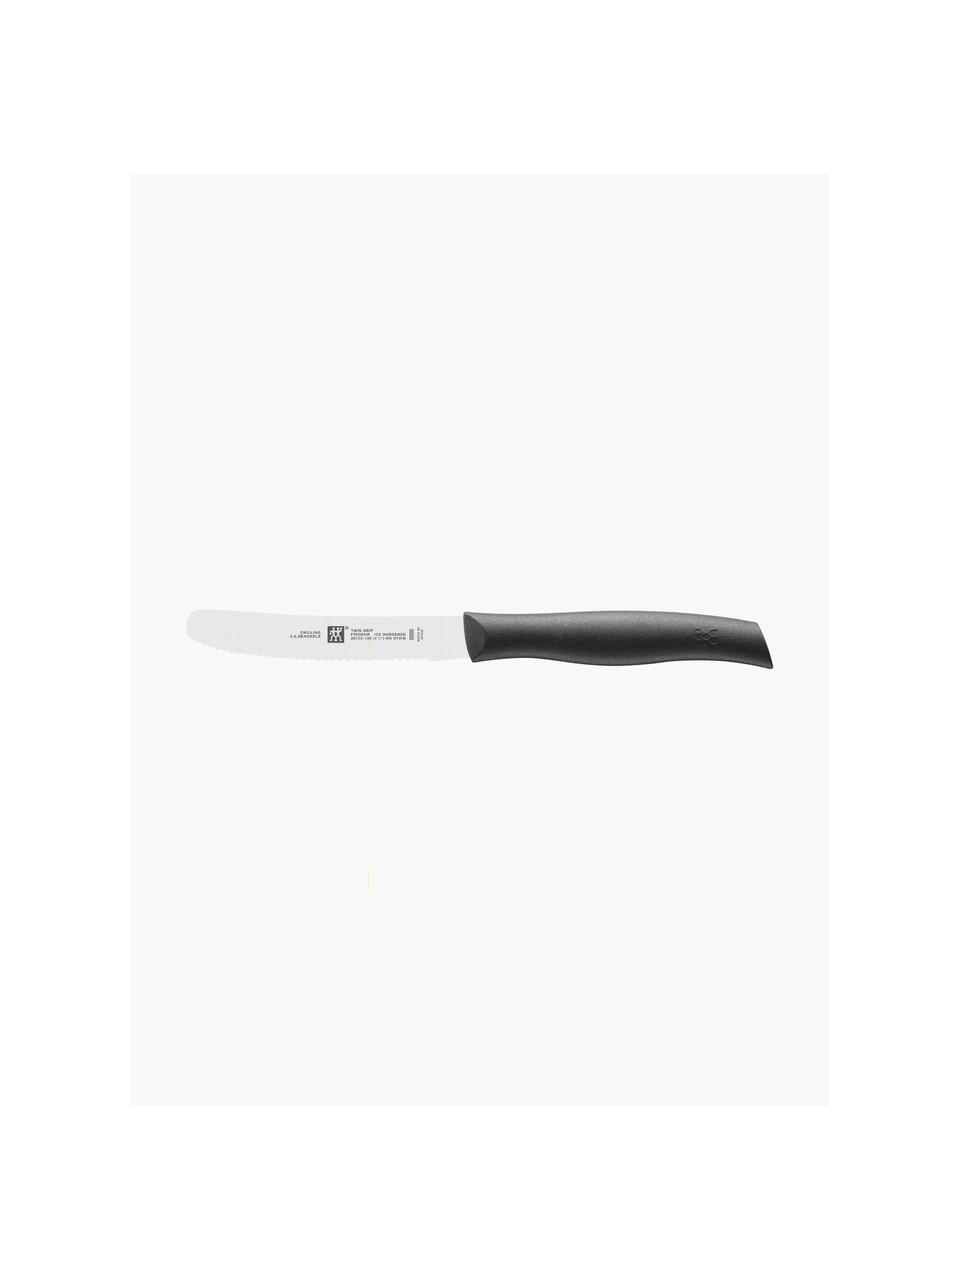 Snídaňové nože Twin, 6 ks, Stříbrná, černá, D 25 cm